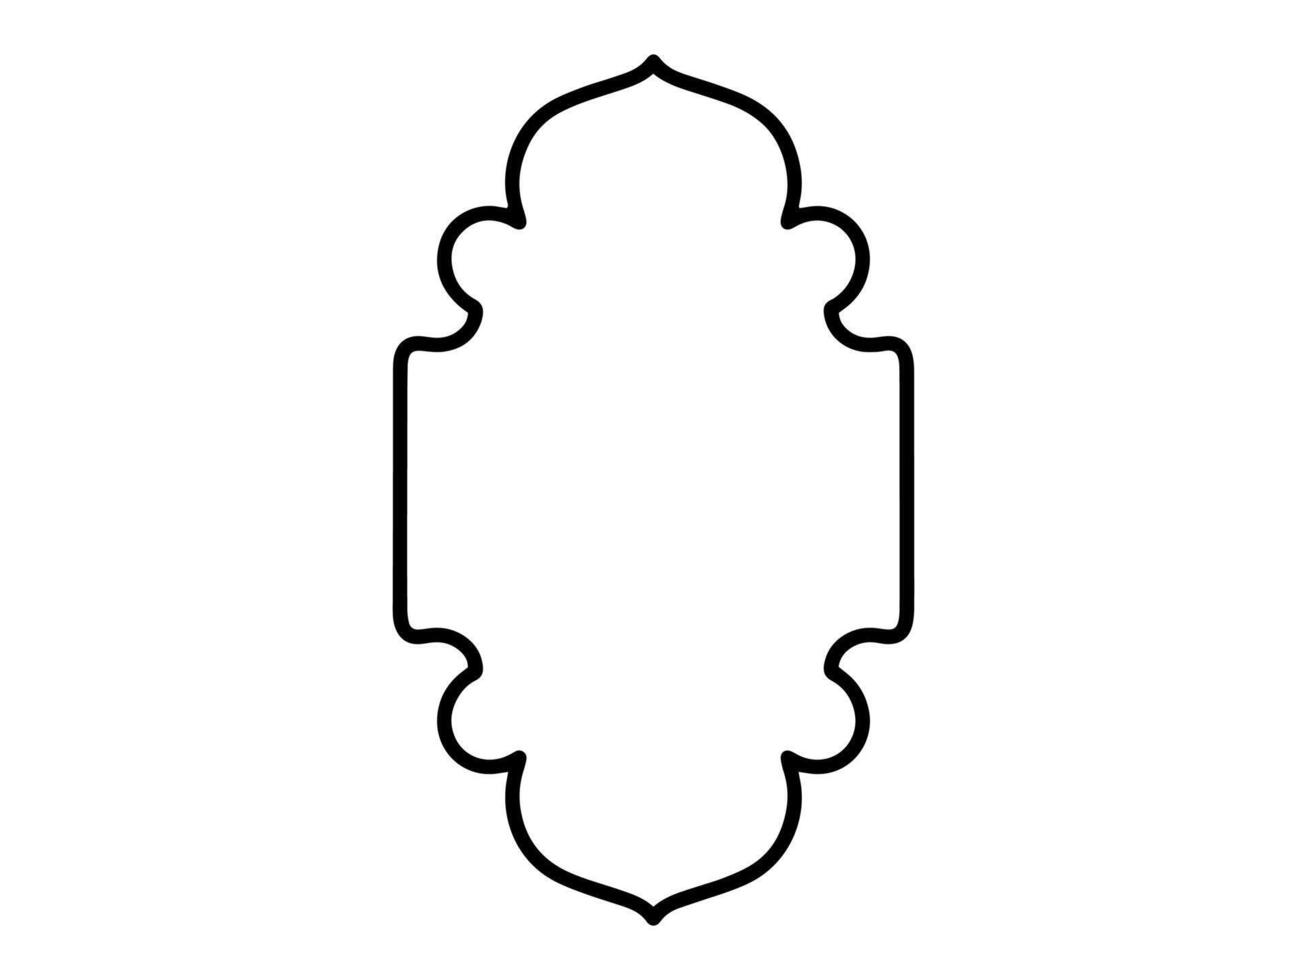 Islamic Frame Line Art Background vector